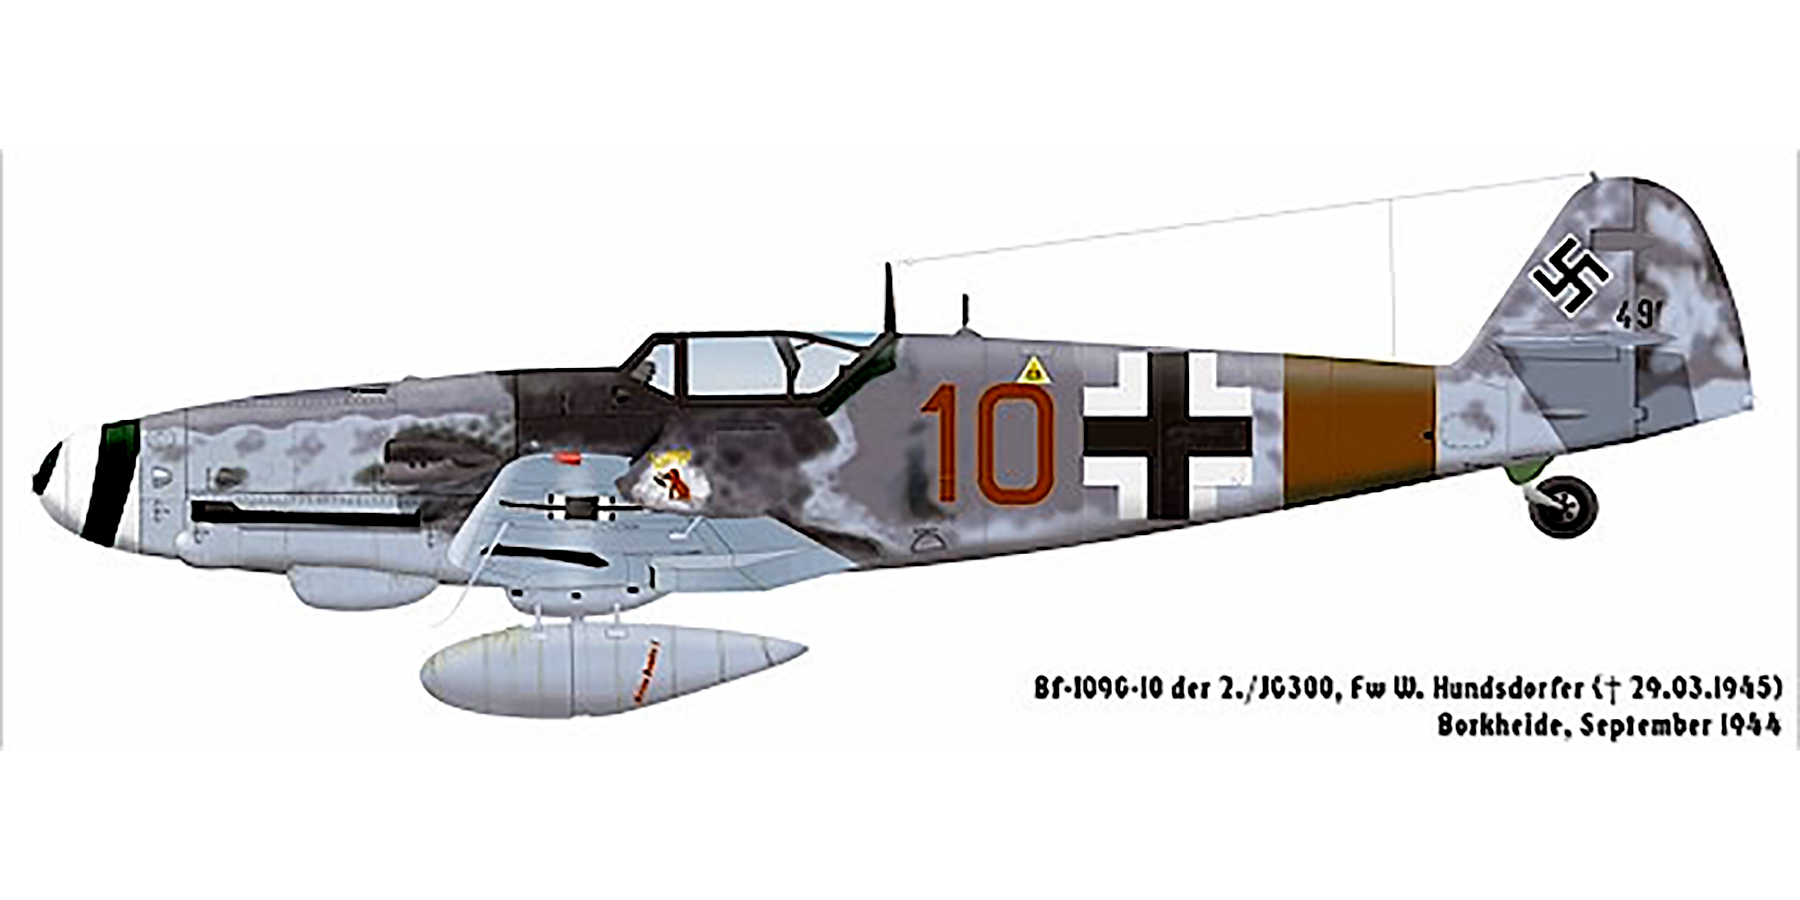 Messerschmitt Bf 109G10R3 Erla 2.JG300 Red 10 Walter Hundsdorfer Borkheide 1944 0A